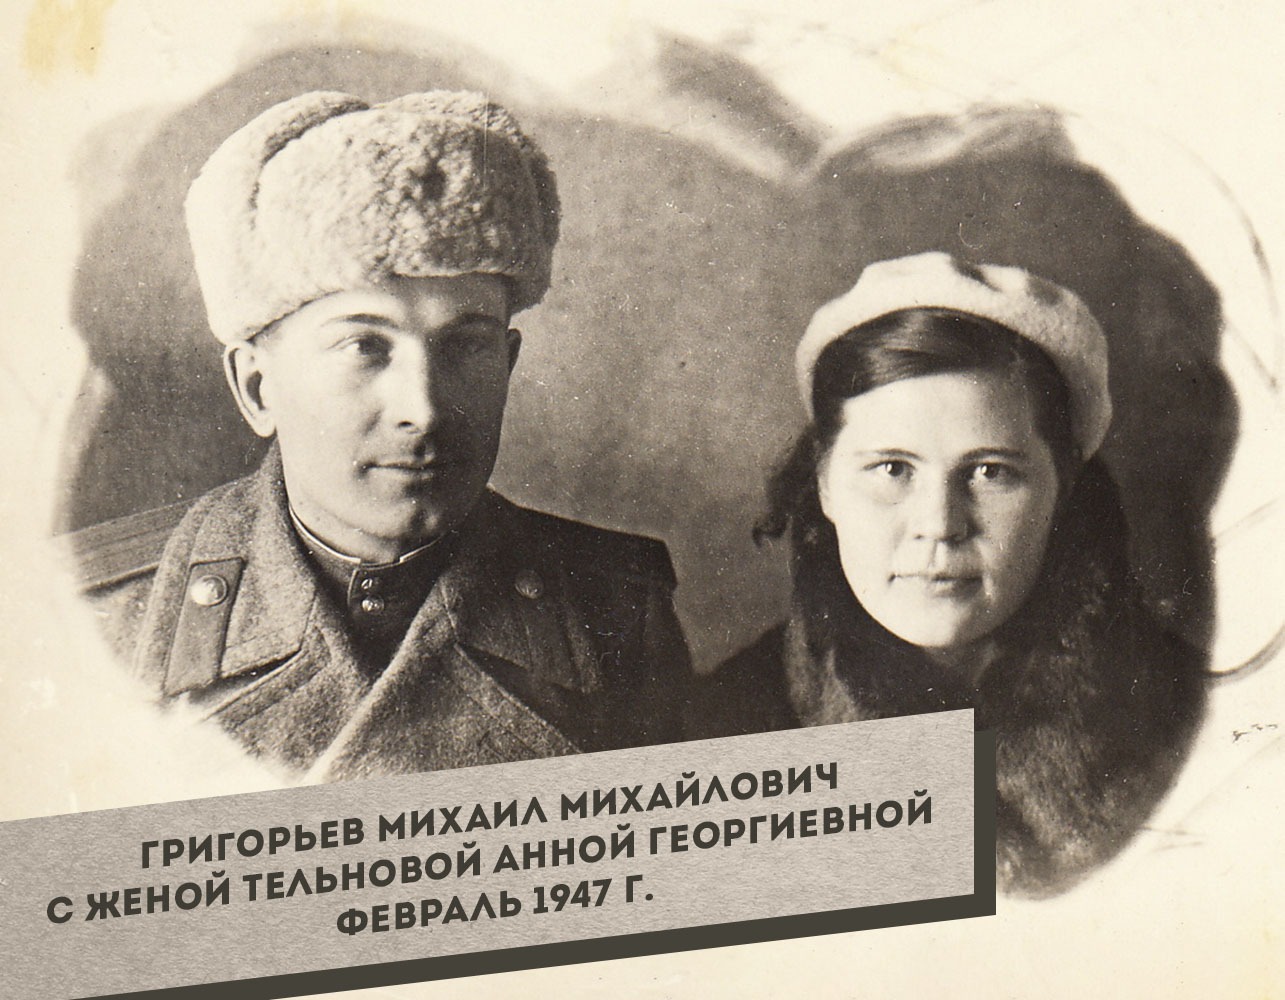 2.-Grigorev-Mihail-Mihaylovich-s-zhenoy-Telnovoy-Annoy-Georgievnoy-fevral-1947_